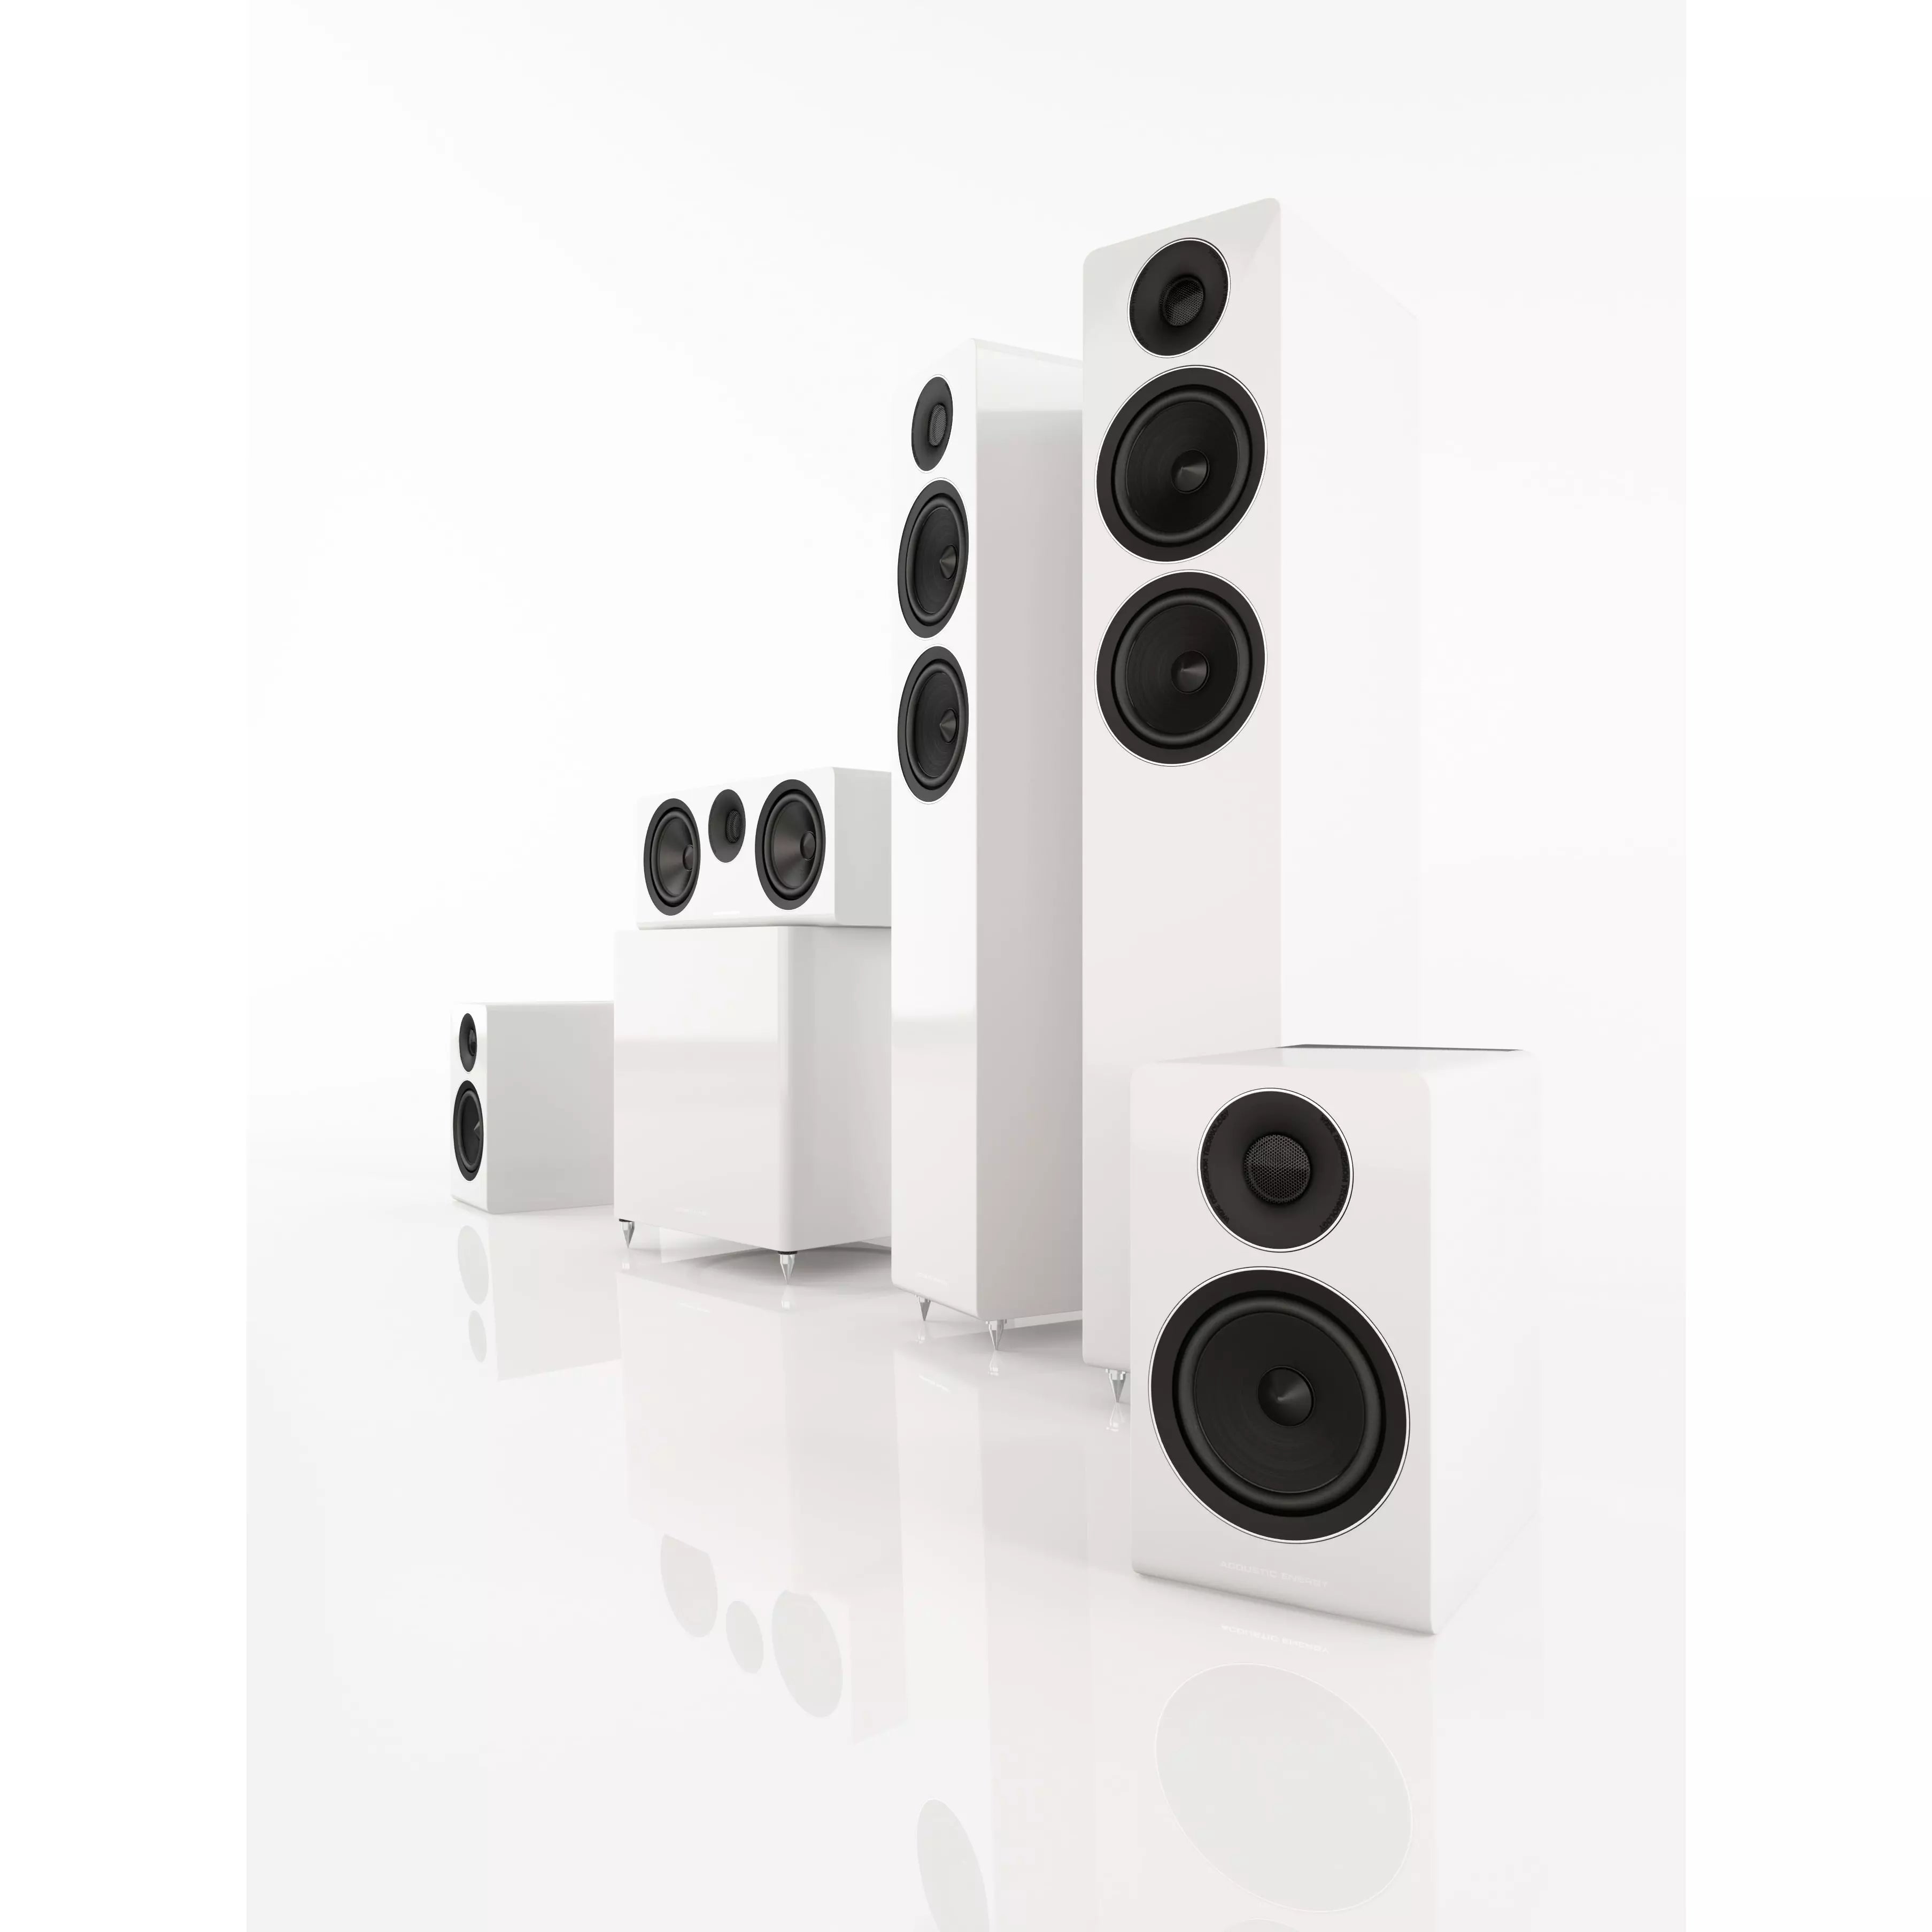 Acoustic Energy AE320 Floorstanding Speakers